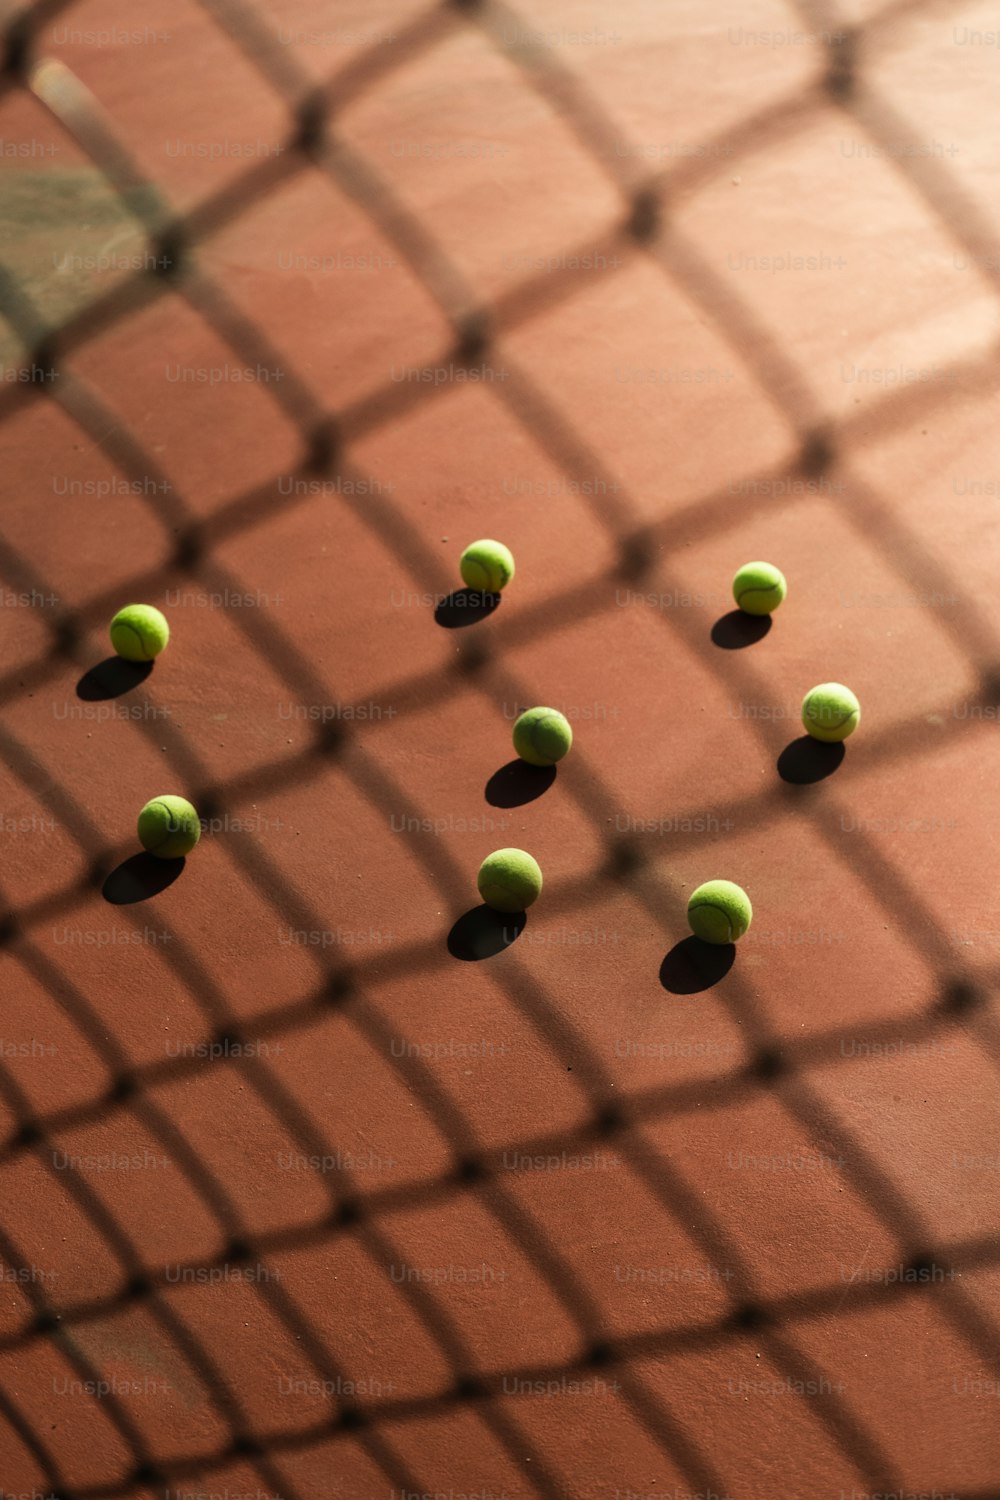 Un grupo de pelotas de tenis sentadas encima de una cancha de tenis